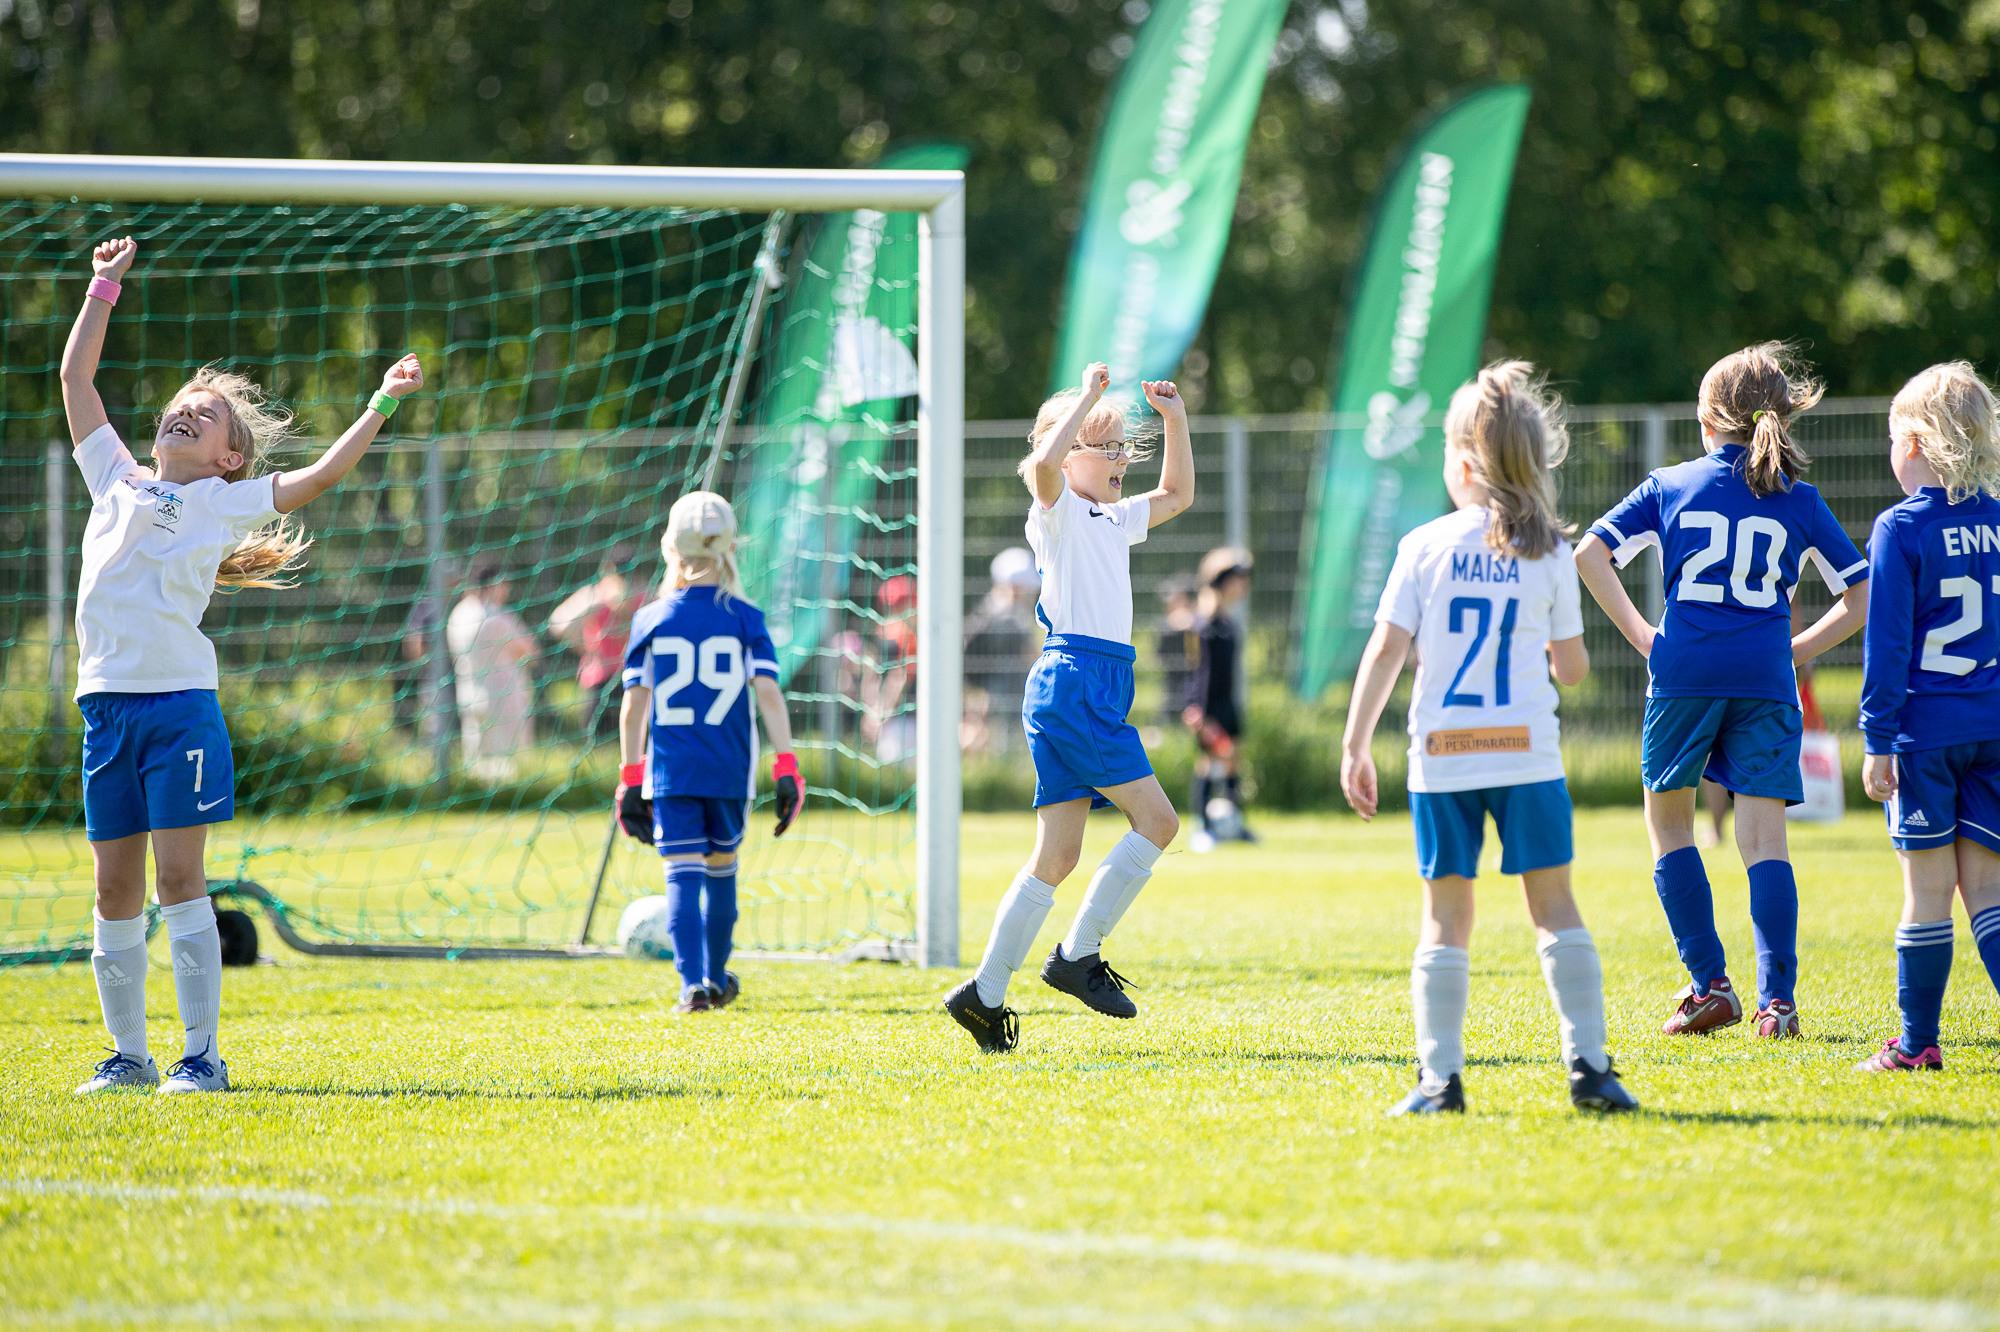 Pienet tytöt tuulettavat jalkapallon parissa.